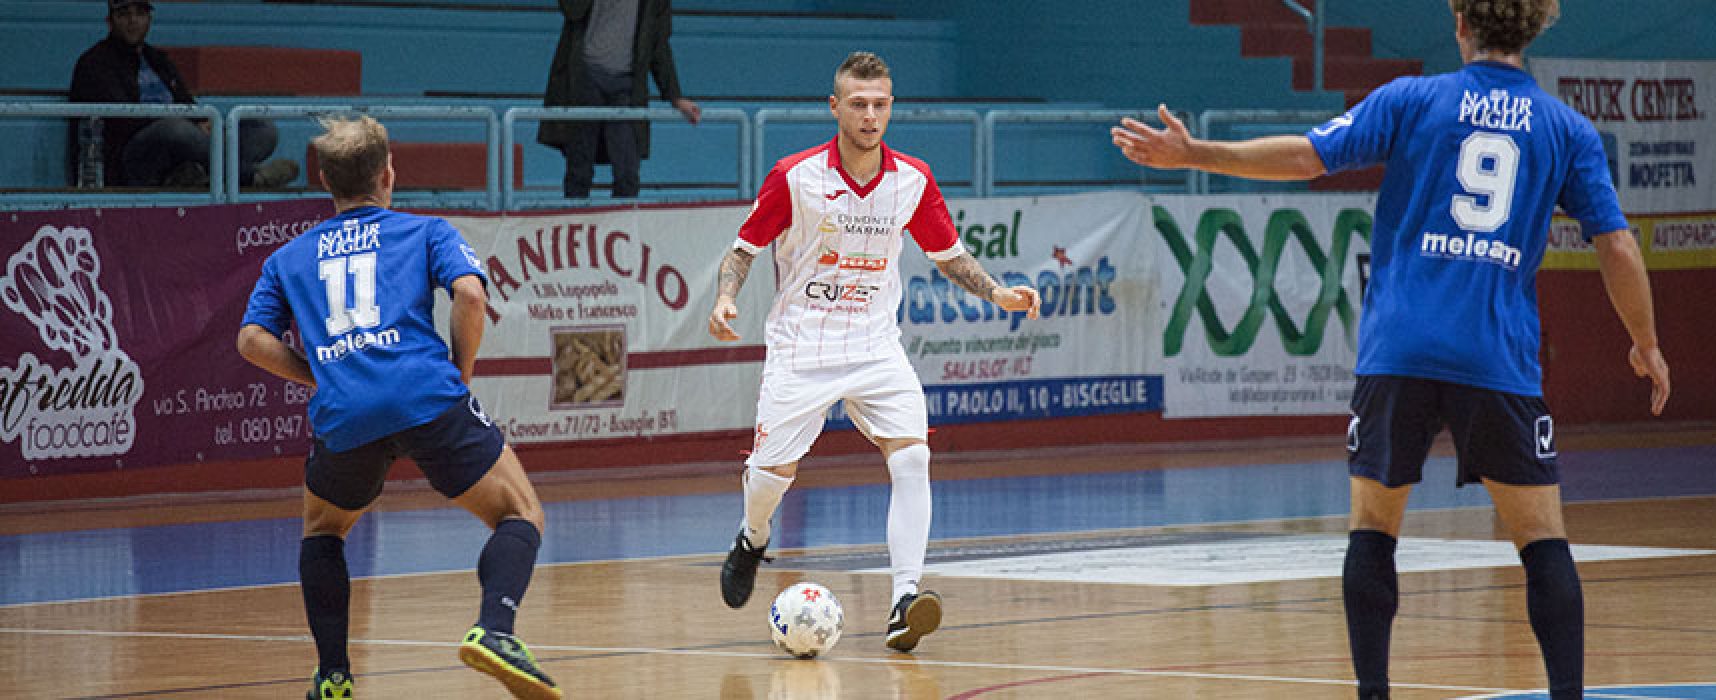 Coppa Italia serie C1: Diaz raggiunta a tempo scaduto dal Futsal Andria